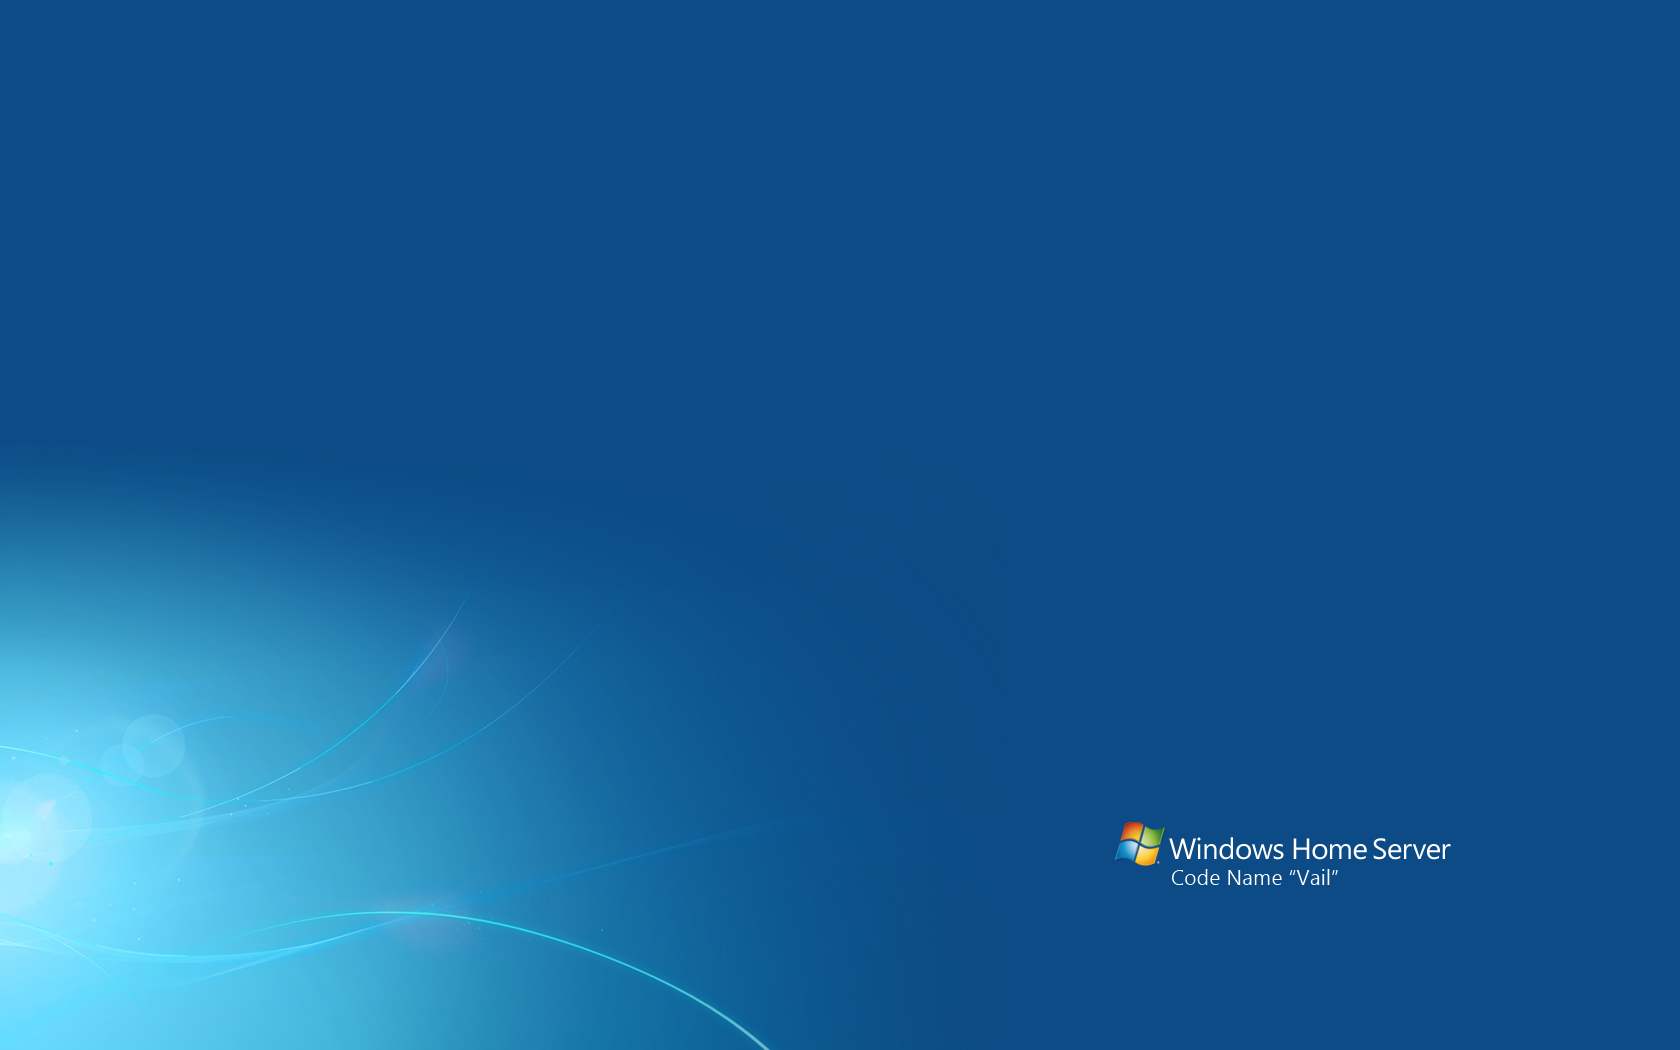 Windows Home Server 2008